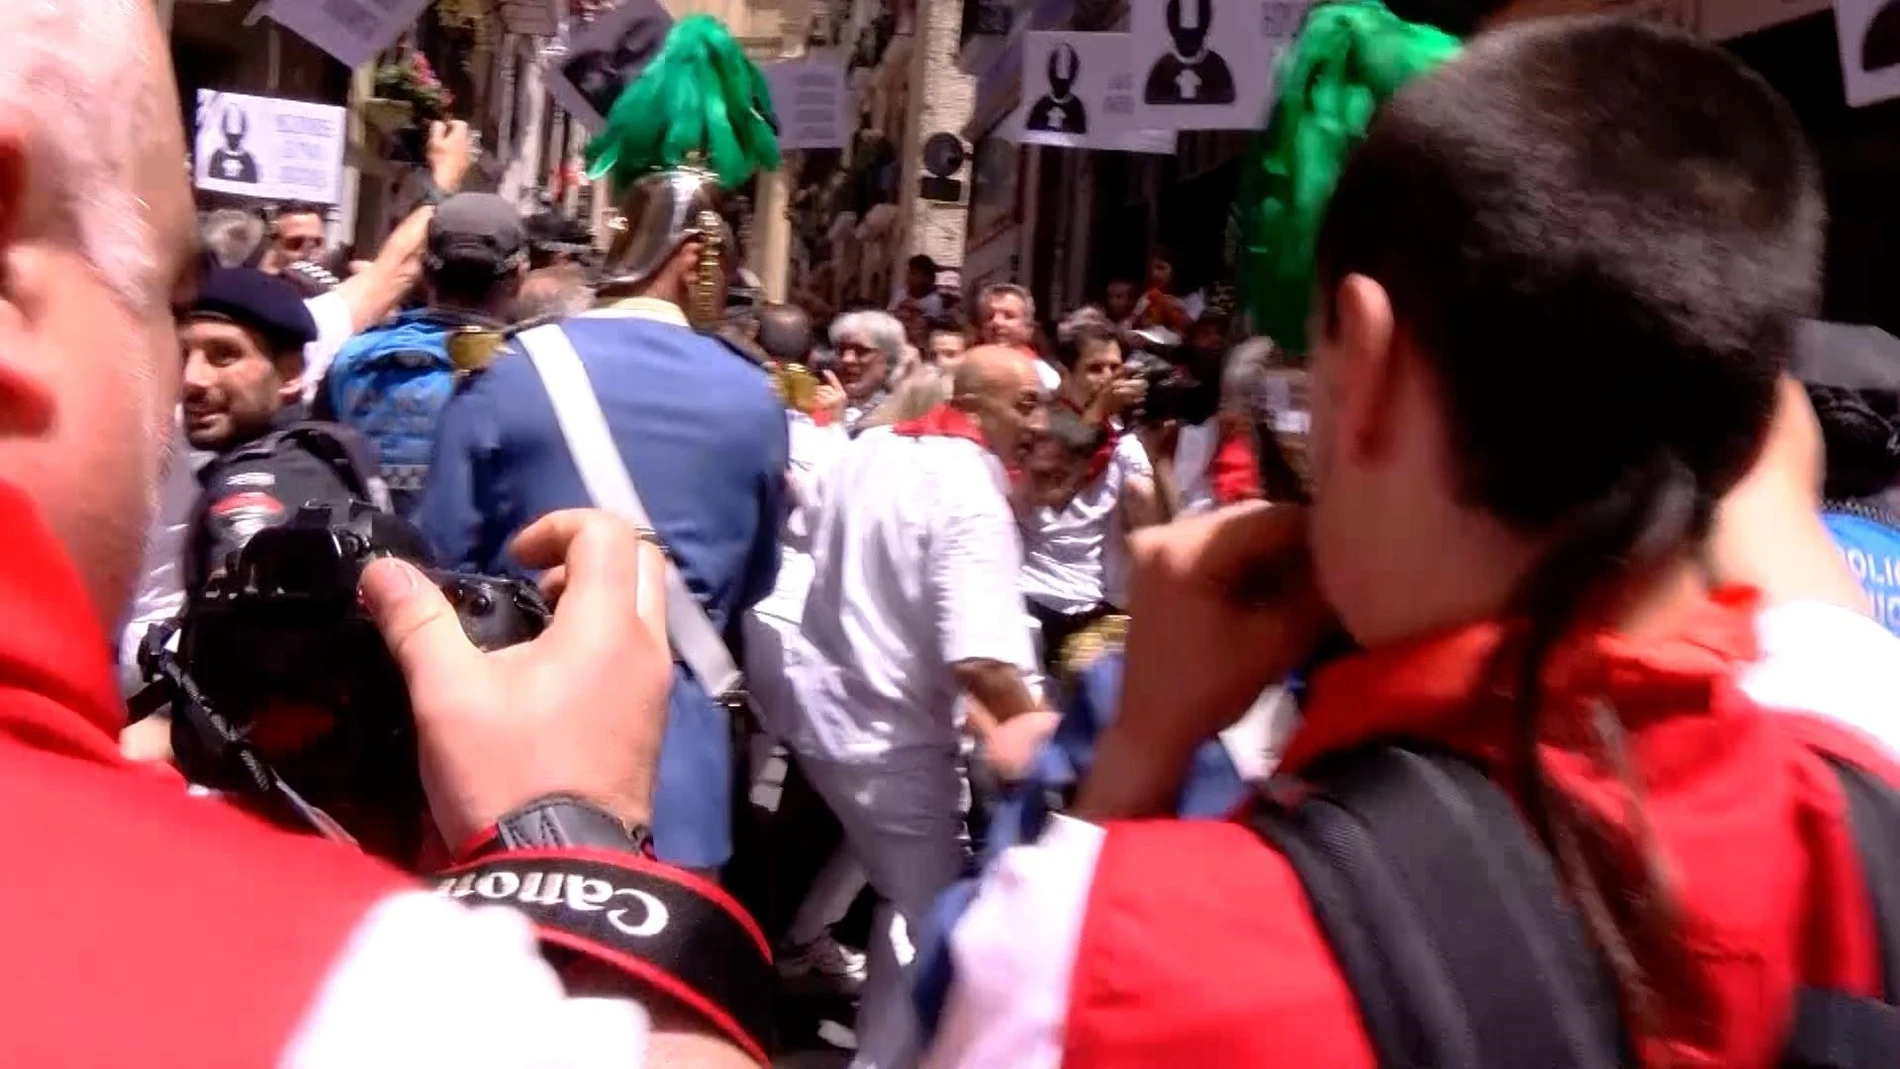 Numerosos miembros de la izquierda abertzale han protagonizado una agresión contra el alcalde y los concejales de Pamplona durante la procesión de San Fermín, con zarandeos, insultos y empujones que han provocado la caída al suelo de una de las ediles.